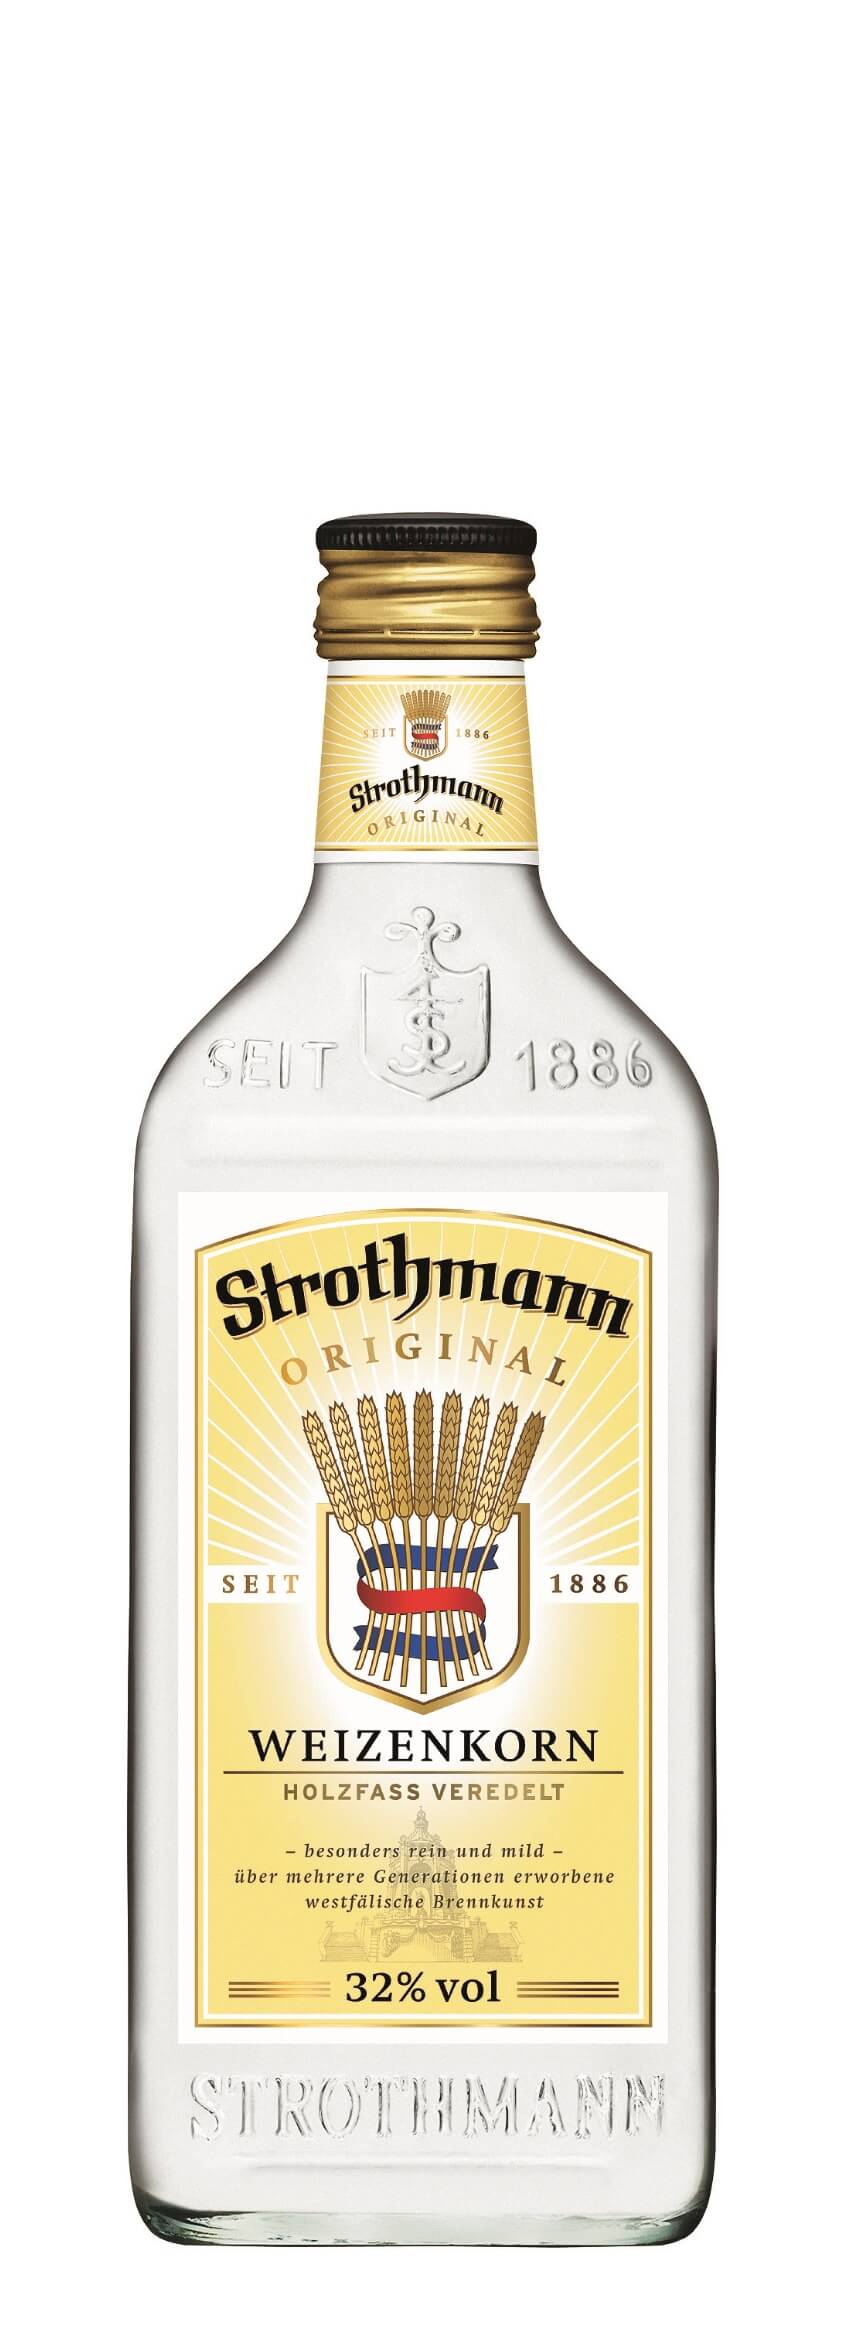 Strothmann Weizenkorn 32% vol., 0,35l